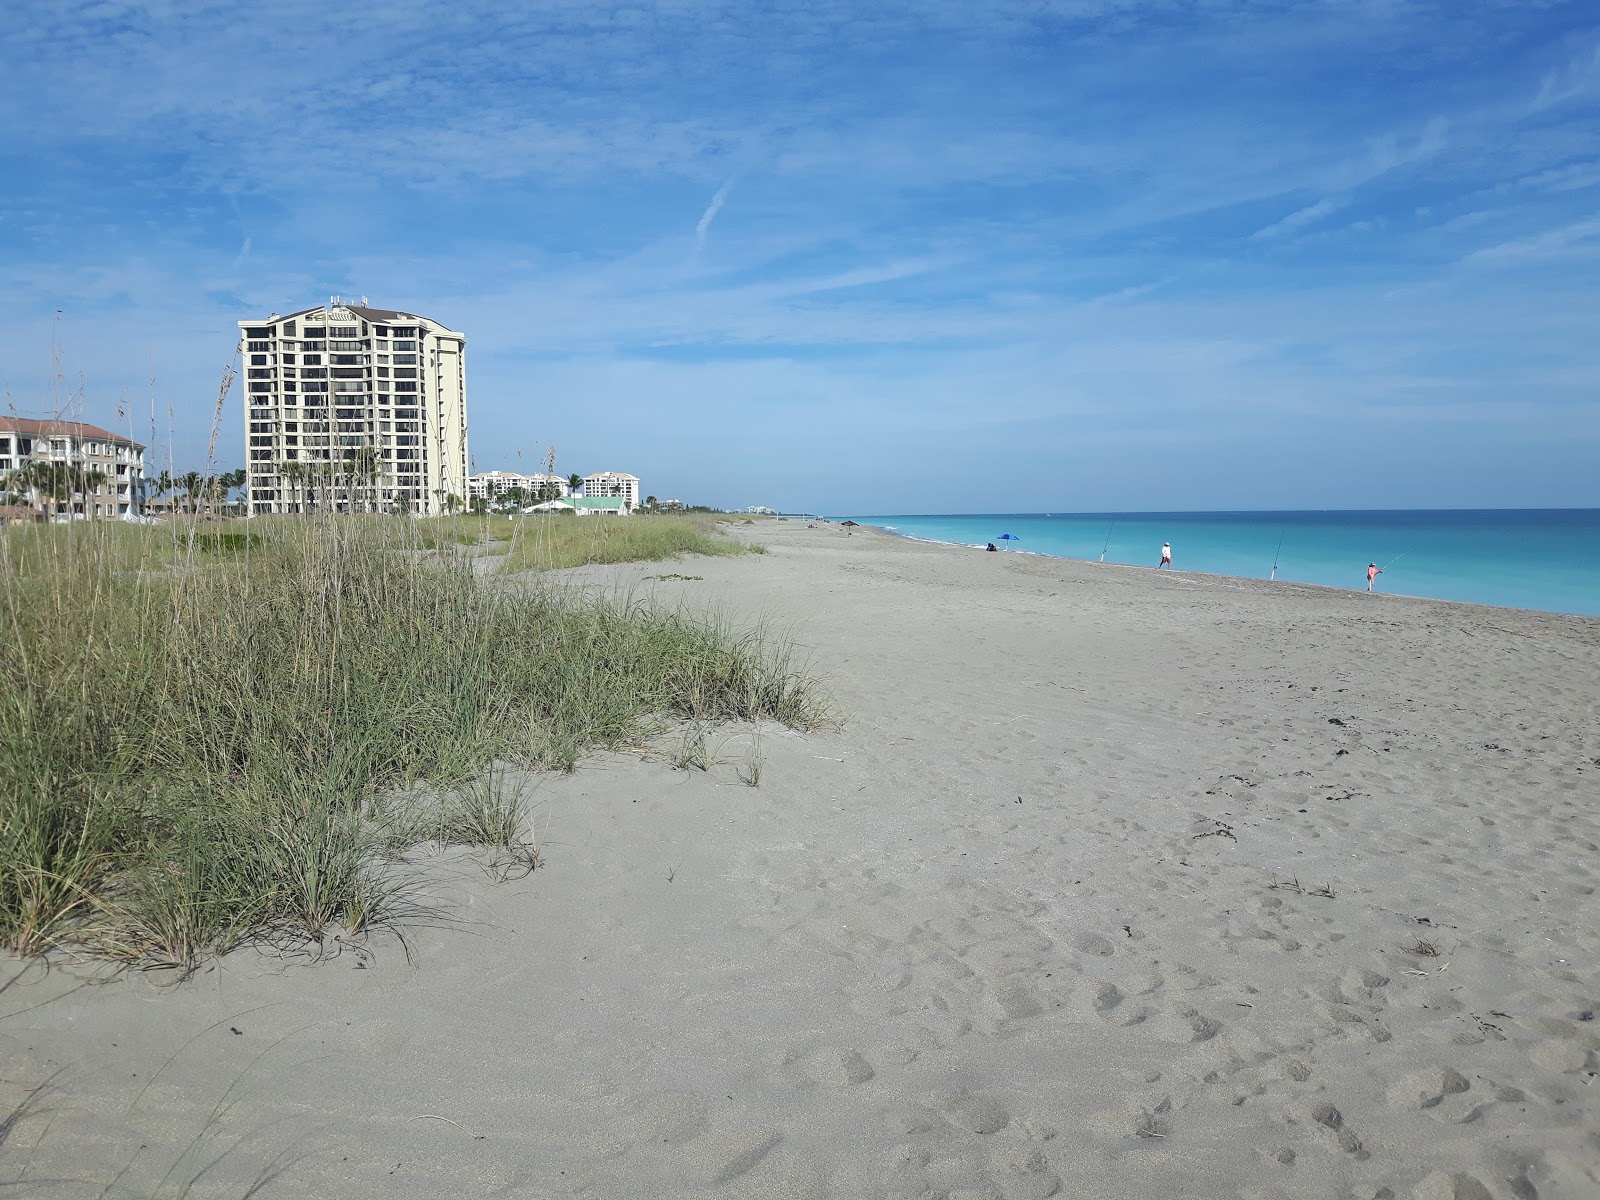 Zdjęcie Blue Heron beach z powierzchnią jasny piasek